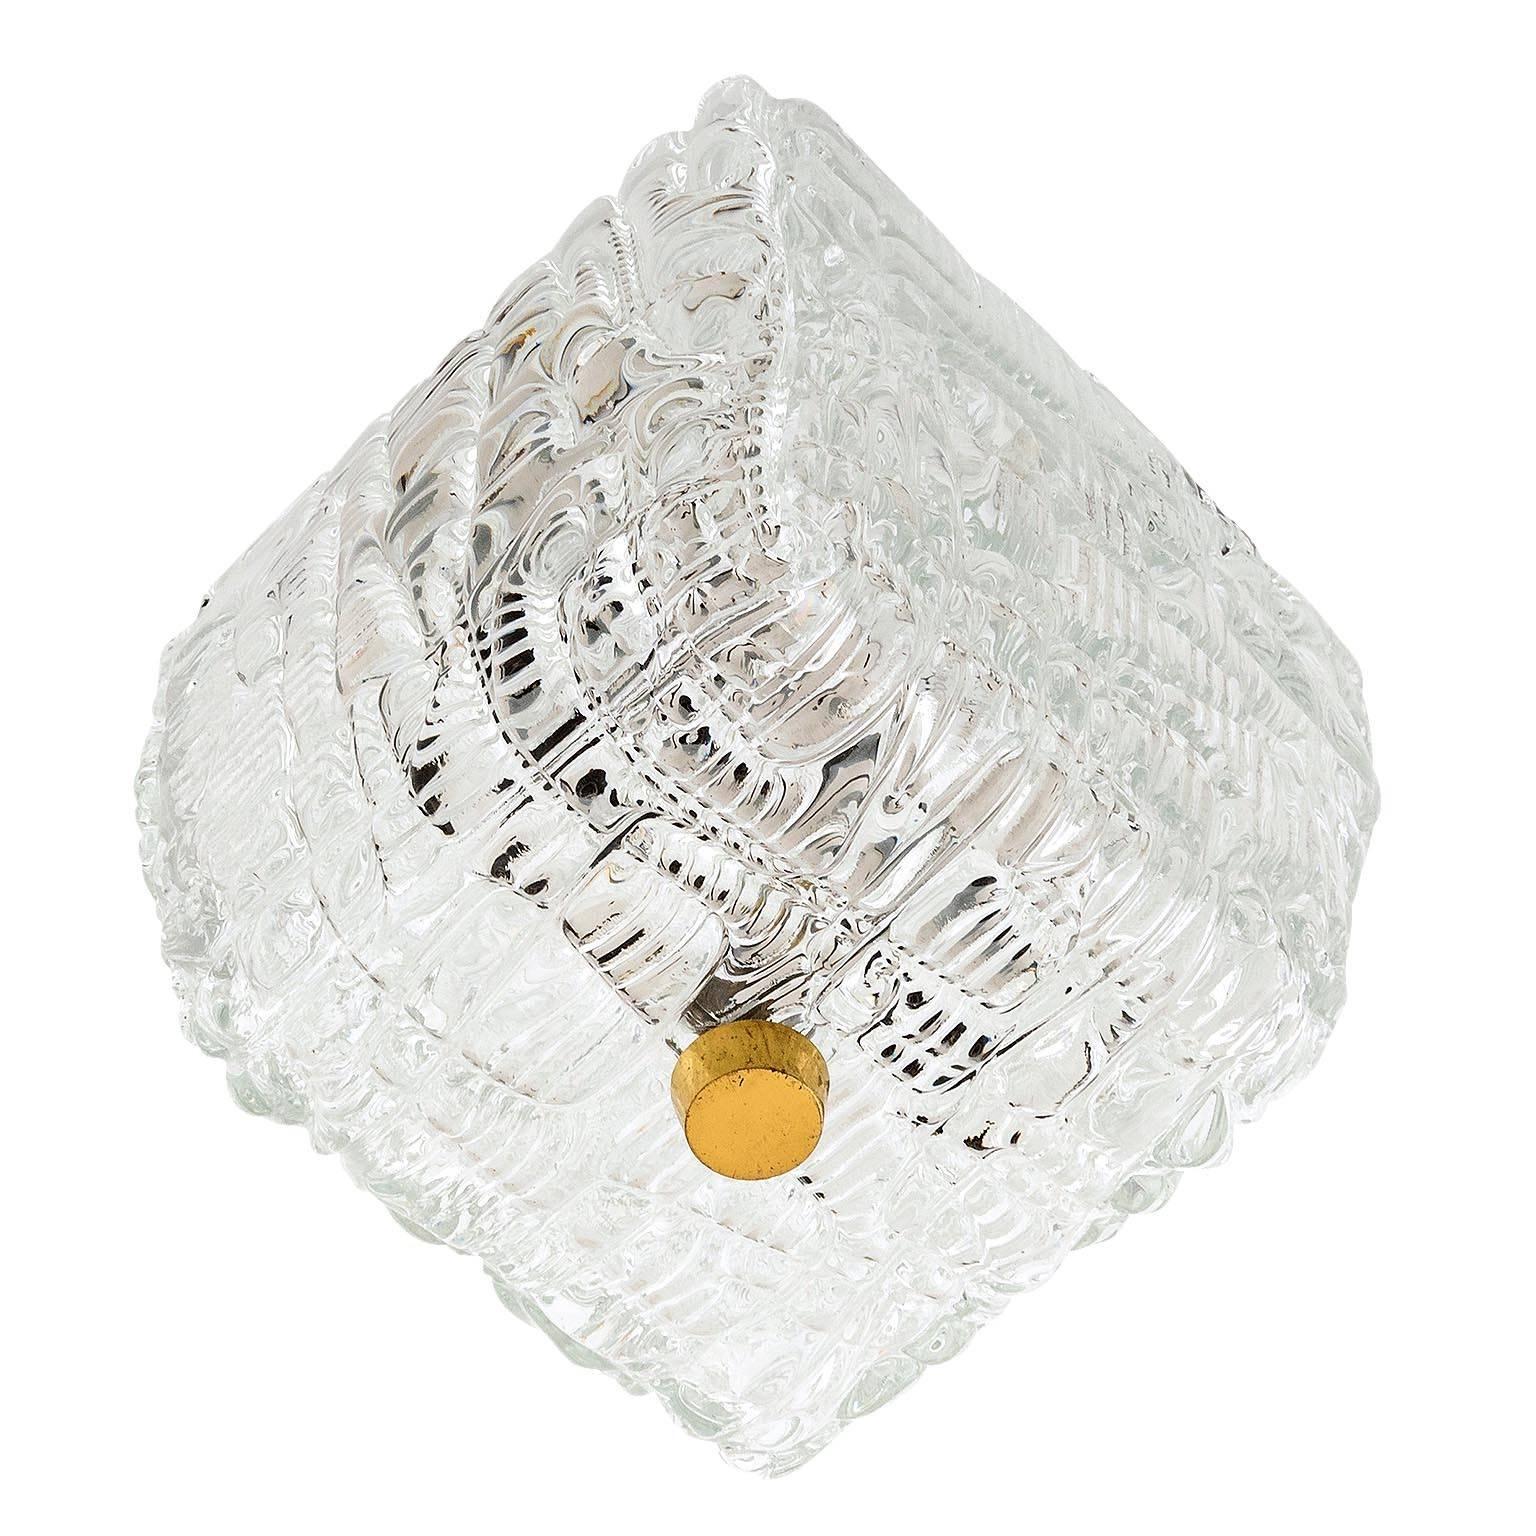 Un des deux luminaires encastrés de Kalmar, Autriche, fabriqués au milieu du siècle dernier, vers 1960 (fin des années 1950 ou début des années 1960). 
Un verre transparent texturé est monté sur une plaque arrière à l'aide d'un bouton en laiton. 
La